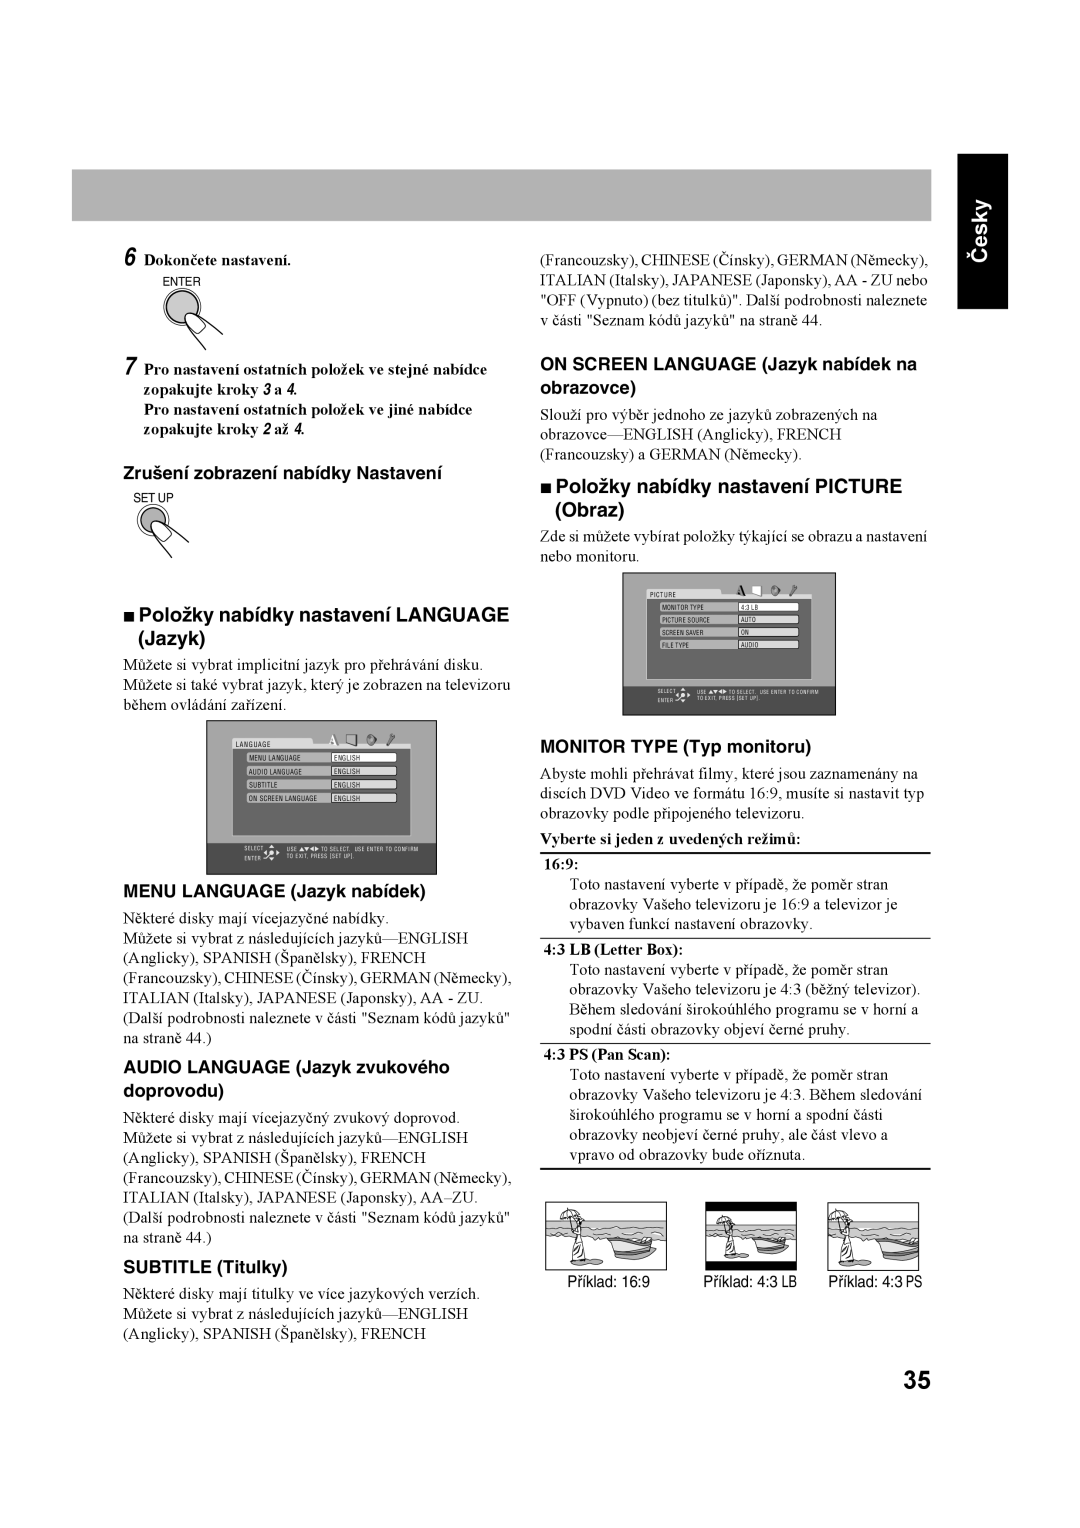 JVC CA-UXS77 Položky nabídky nastavení LANGUAGE Jazyk, Položky nabídky nastavení PICTURE Obraz, SUBTITLE Titulky, Česky 